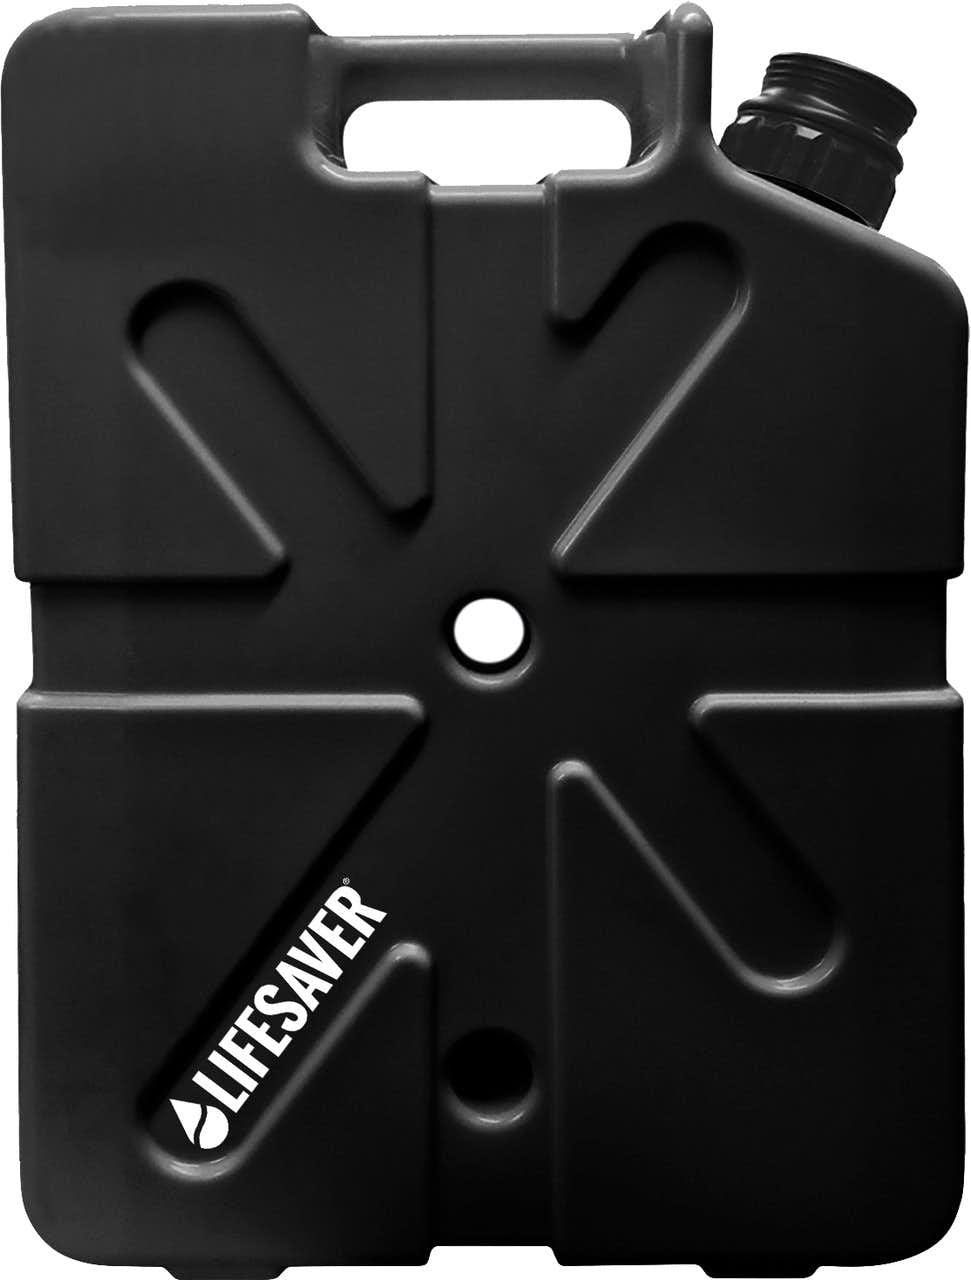 JerryCan 20000 UF Water Purifier Black